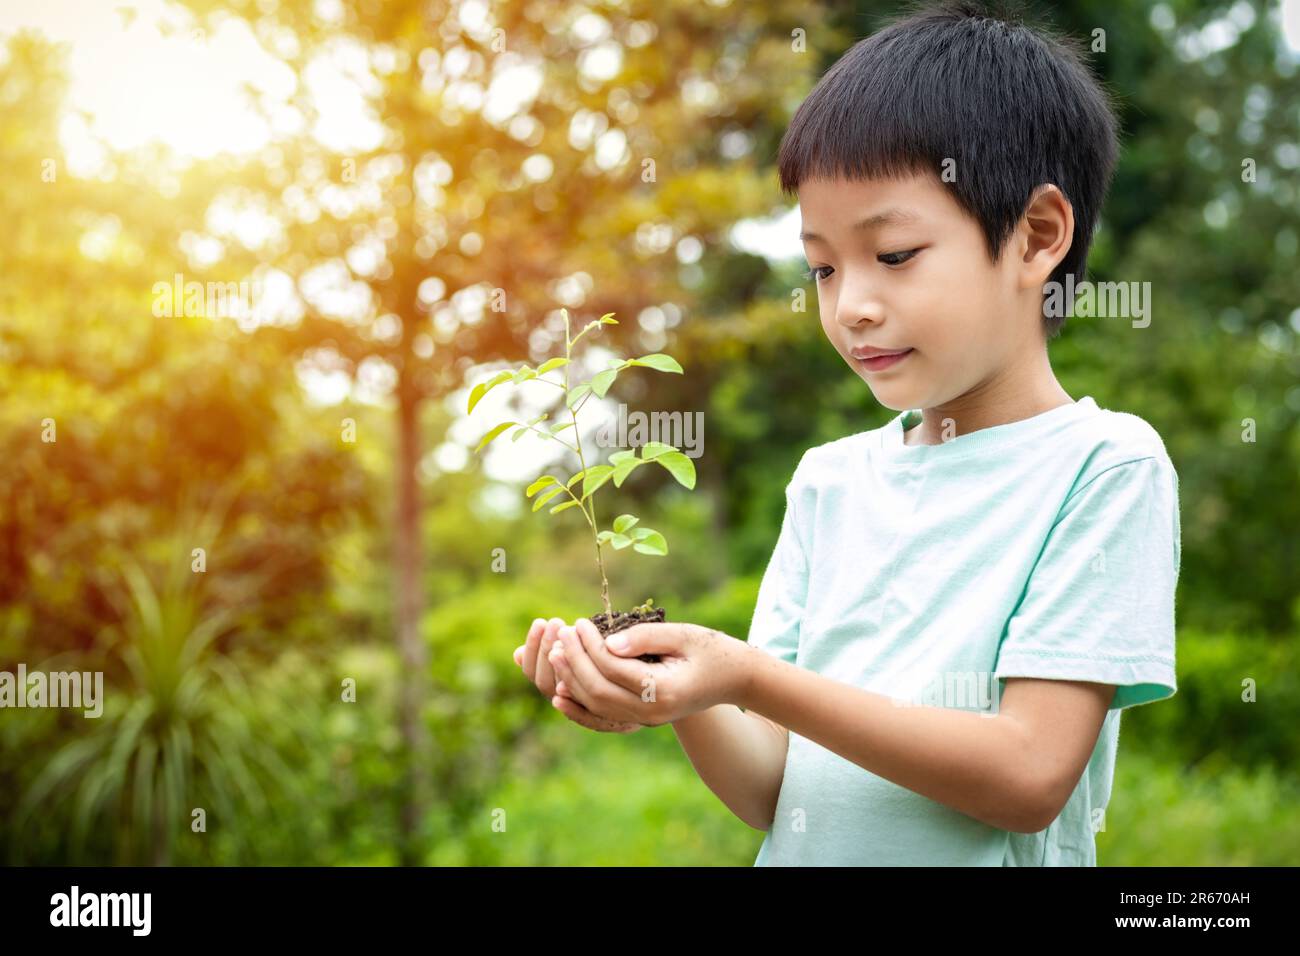 Les mains du petit garçon tiennent un petit arbre. Garçon asiatique tenant une plantule dans sa main. Le garçon sourit et se tient au petit arbre dans sa main Banque D'Images